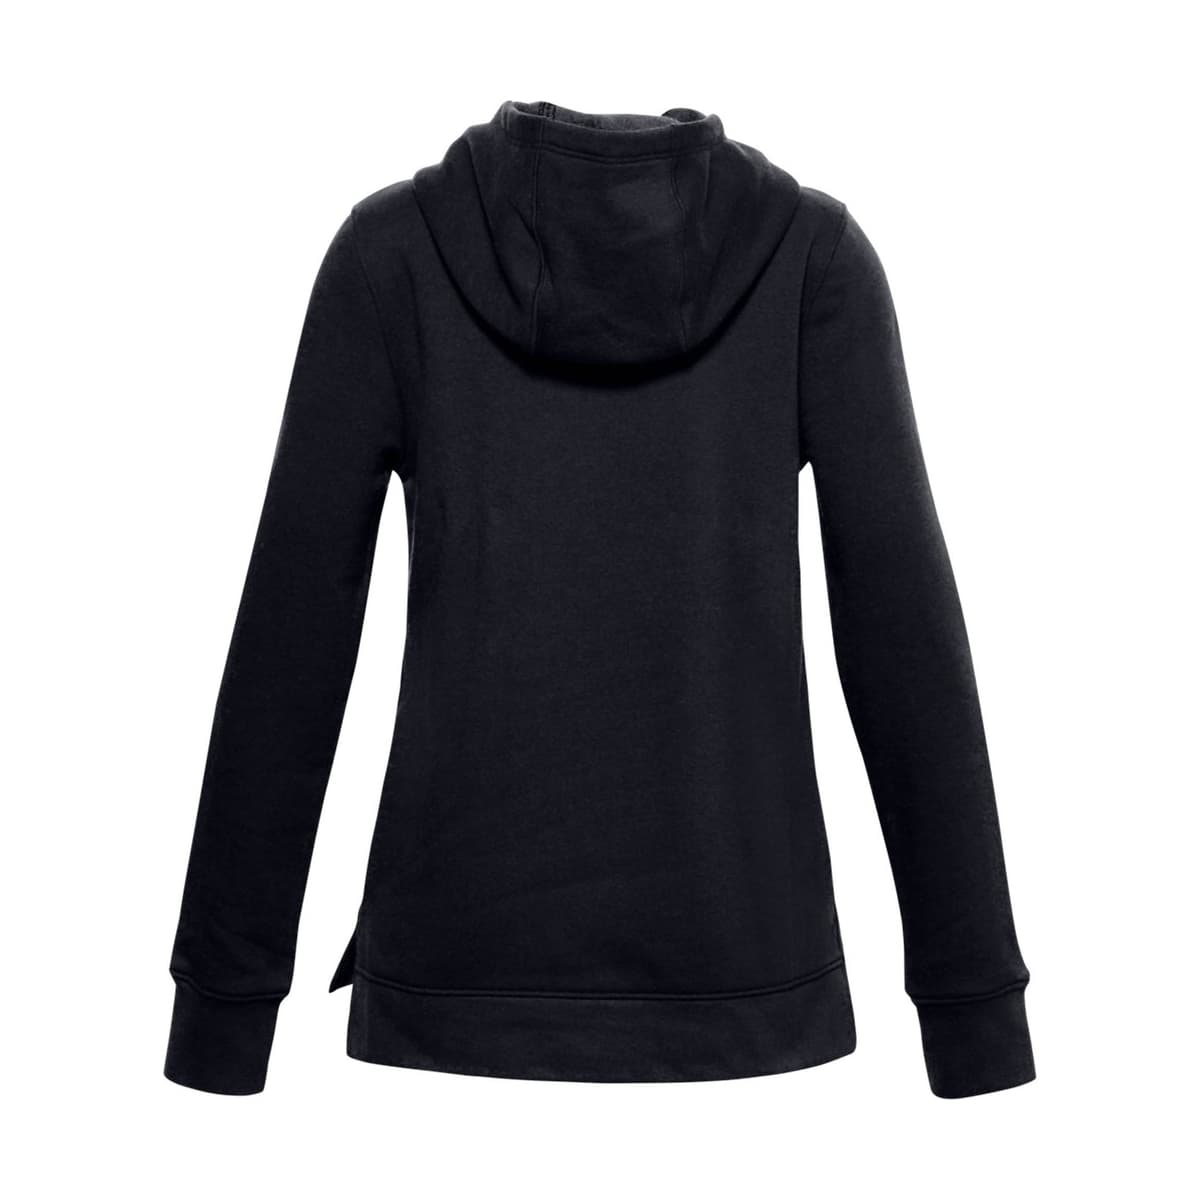 Rival Fleece Kadın Siyah Sweatshirt (1356431-001)